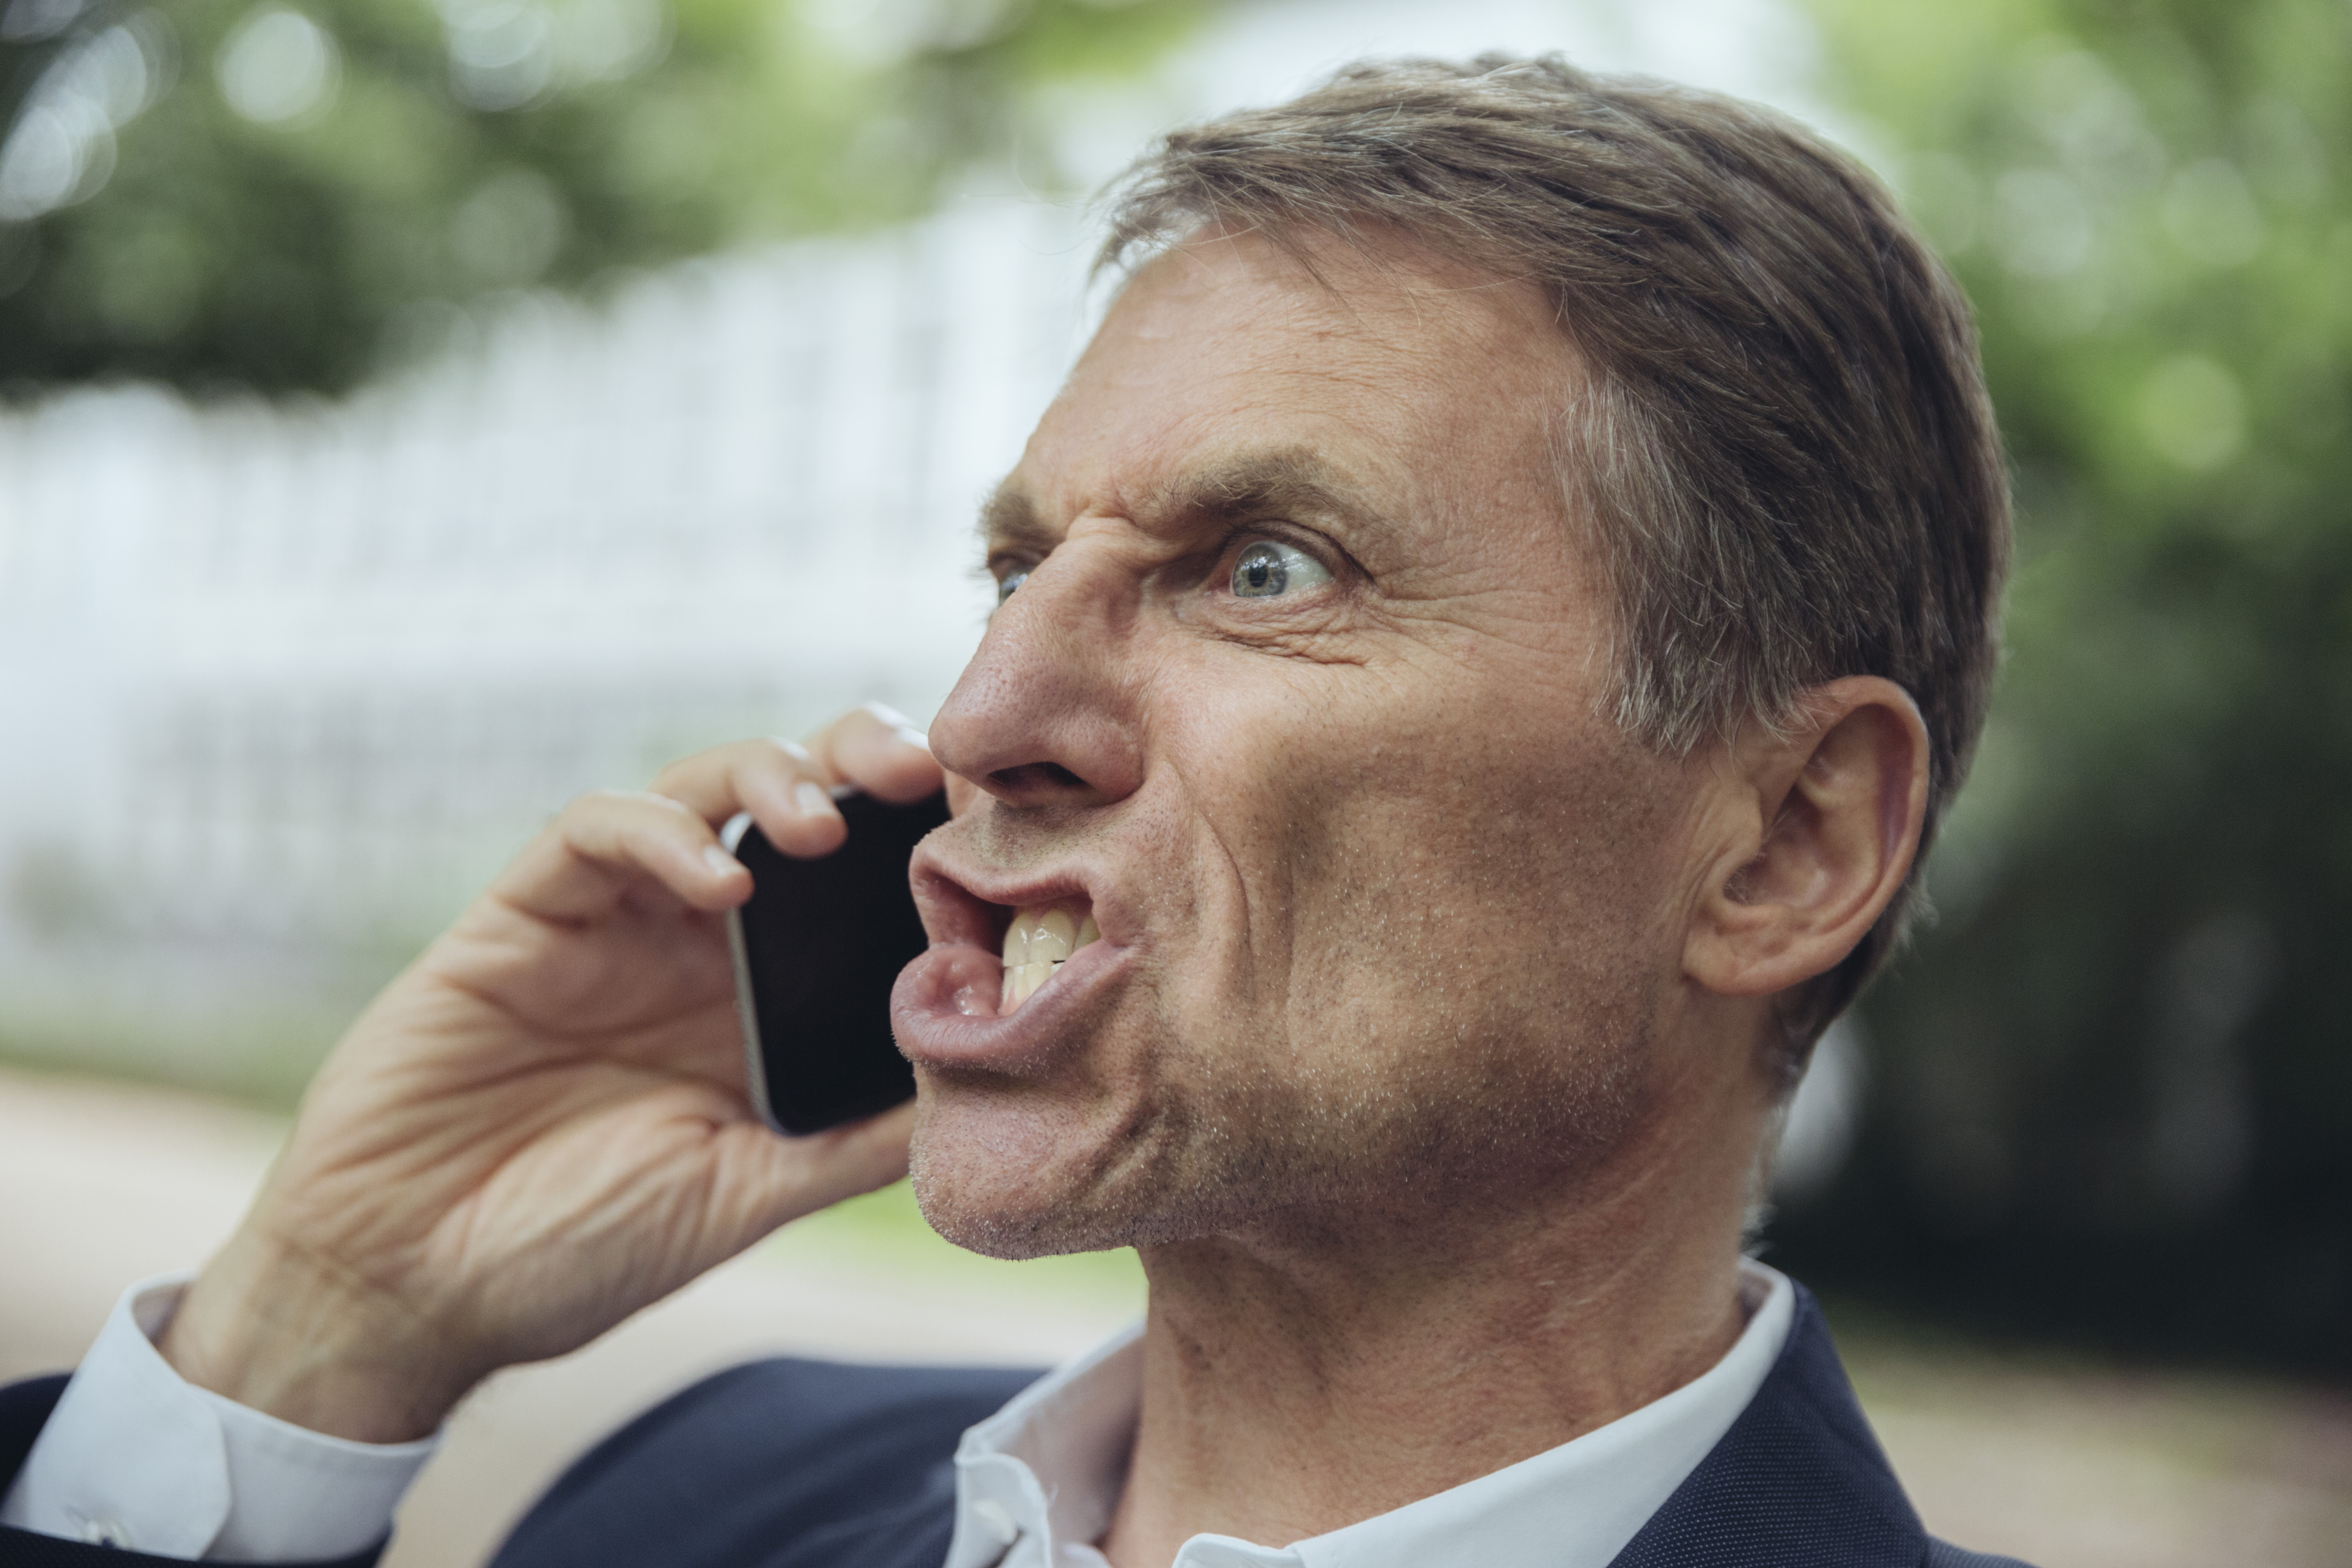 Homme en colère lors d'un appel téléphonique | Source : Getty Images